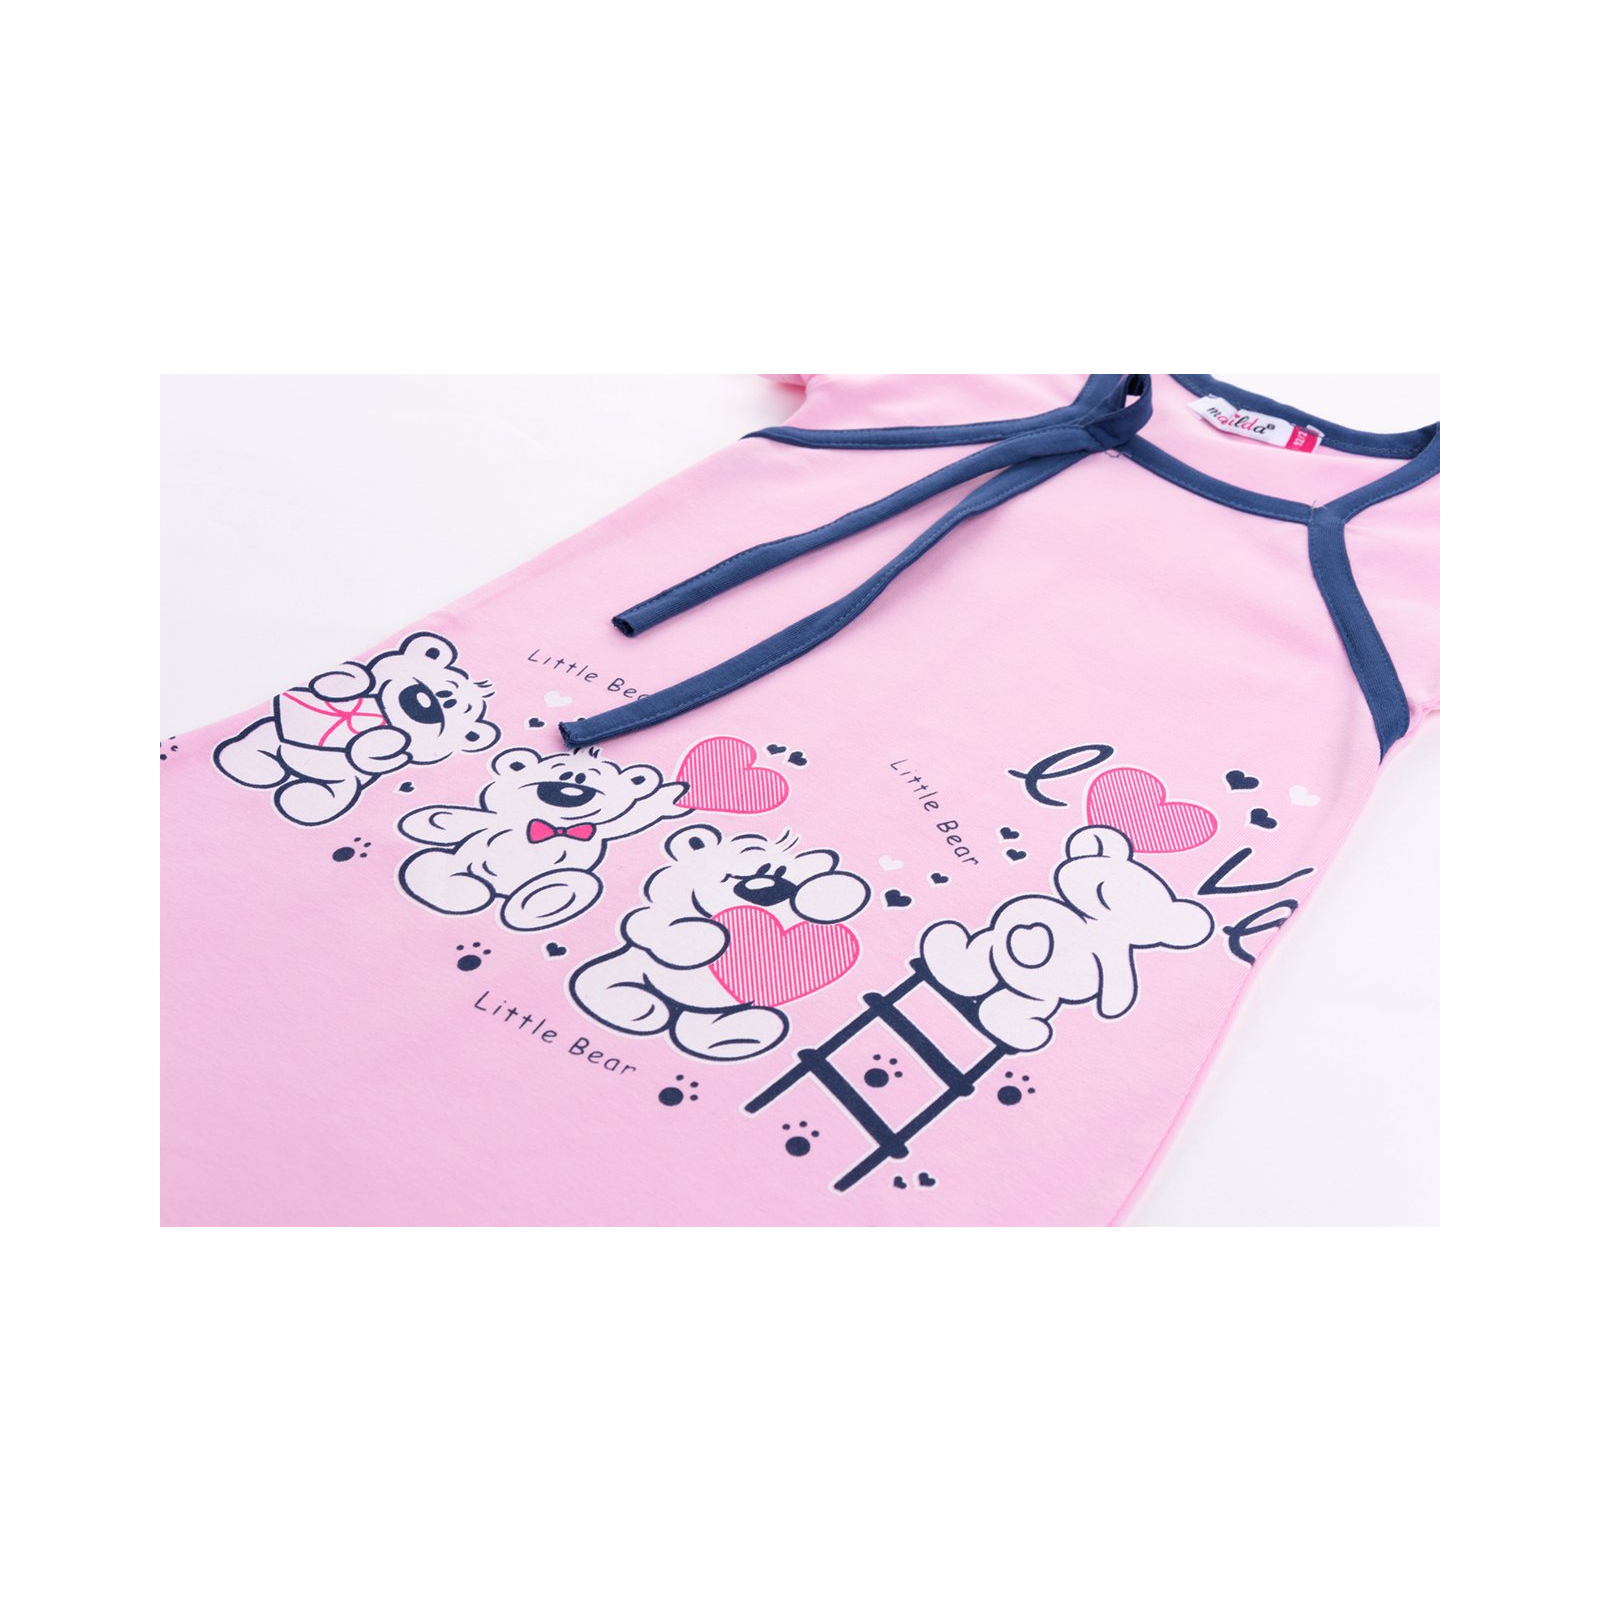 Пижама Matilda и халат с мишками "Love" (7445-98G-pink) изображение 8